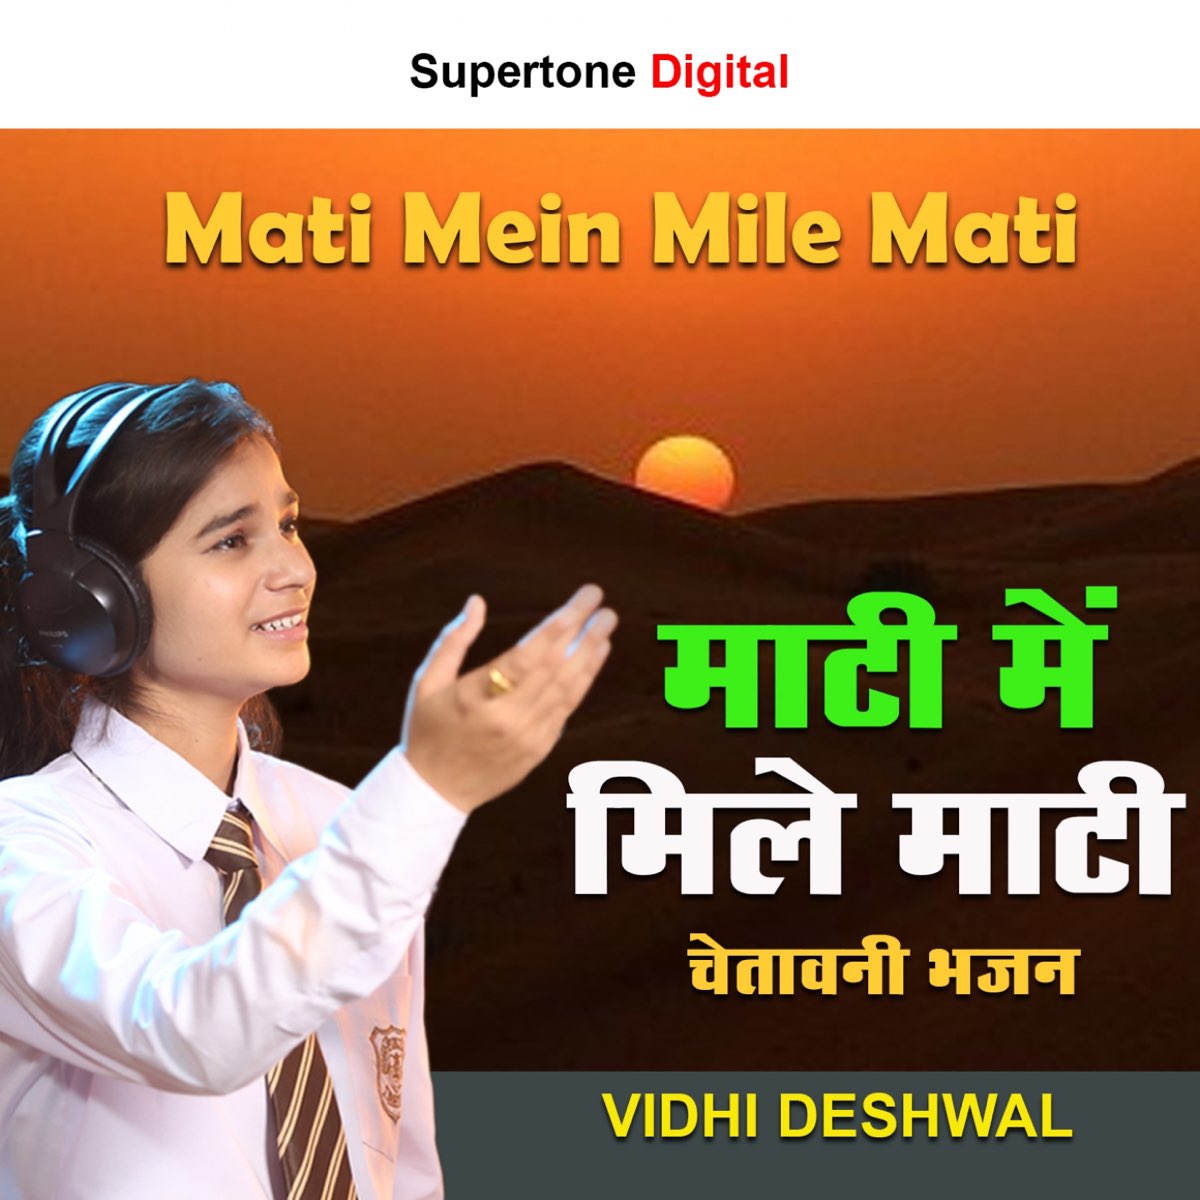 driehoek marmeren besluiten Mati Mein Mile Mati - Single by Vidhi Deshwal on Apple Music